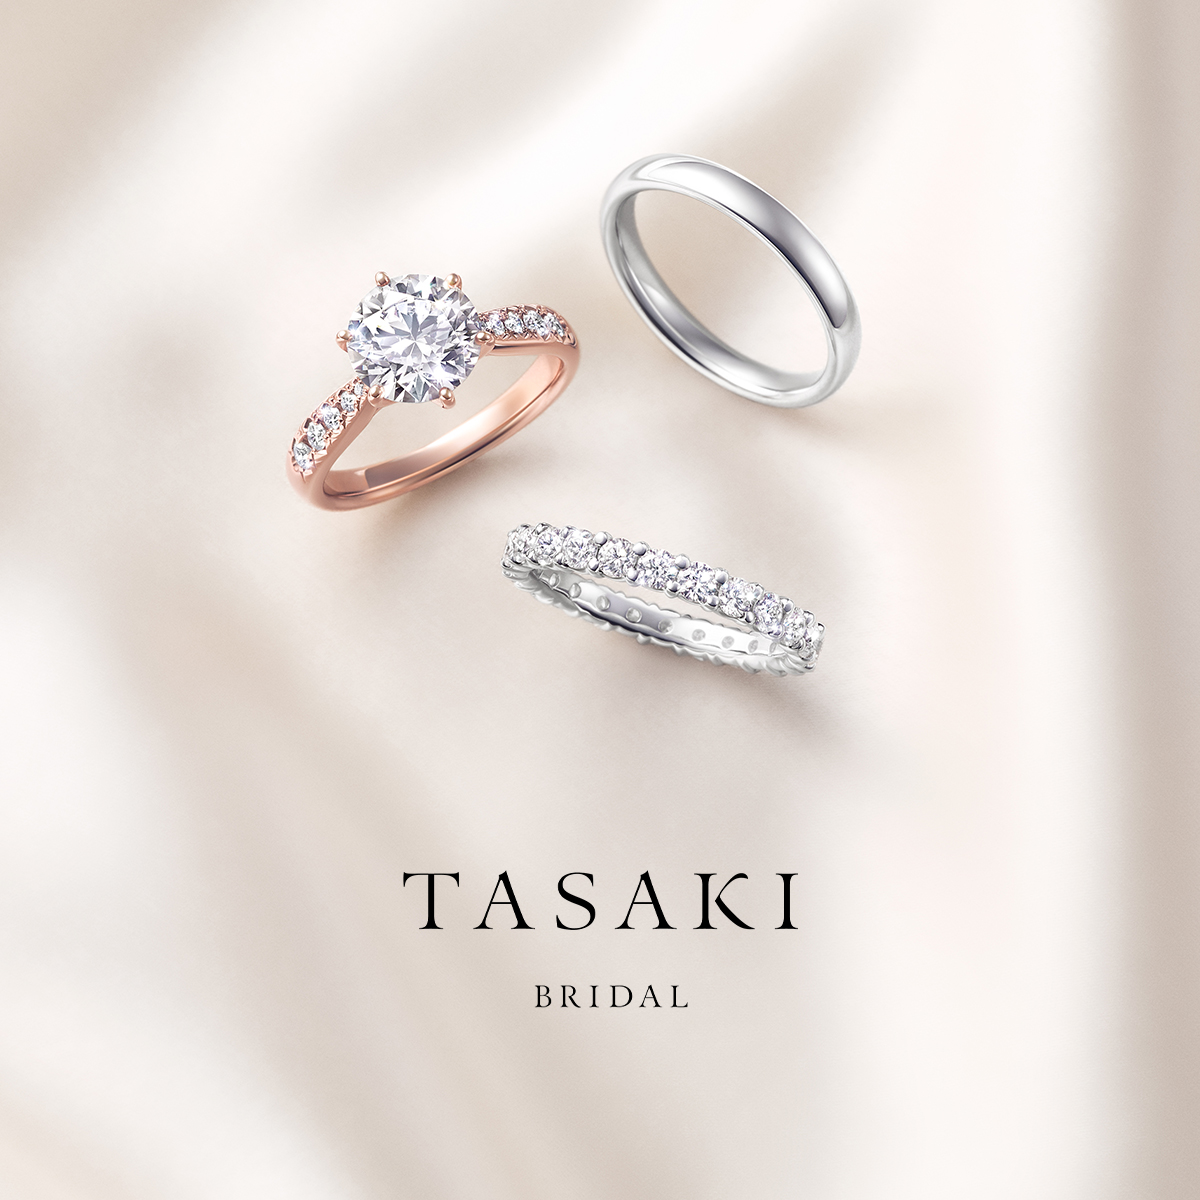 TASAKI 婚約指輪